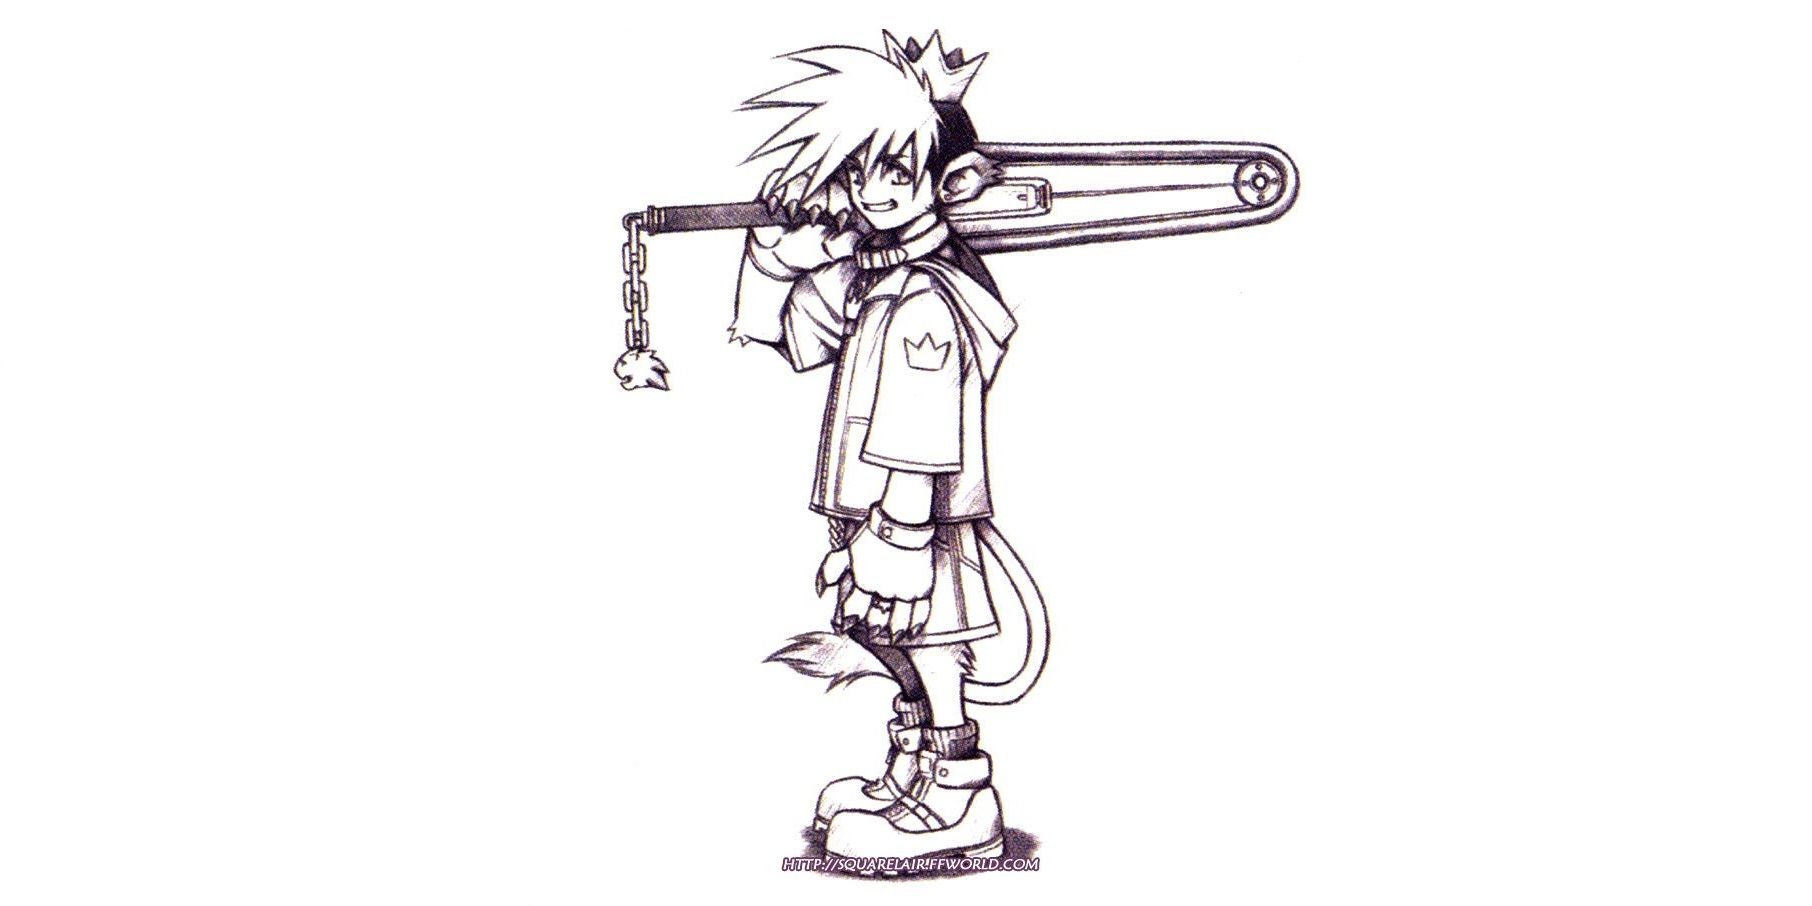 Kingdom Hearts concept art of Sora